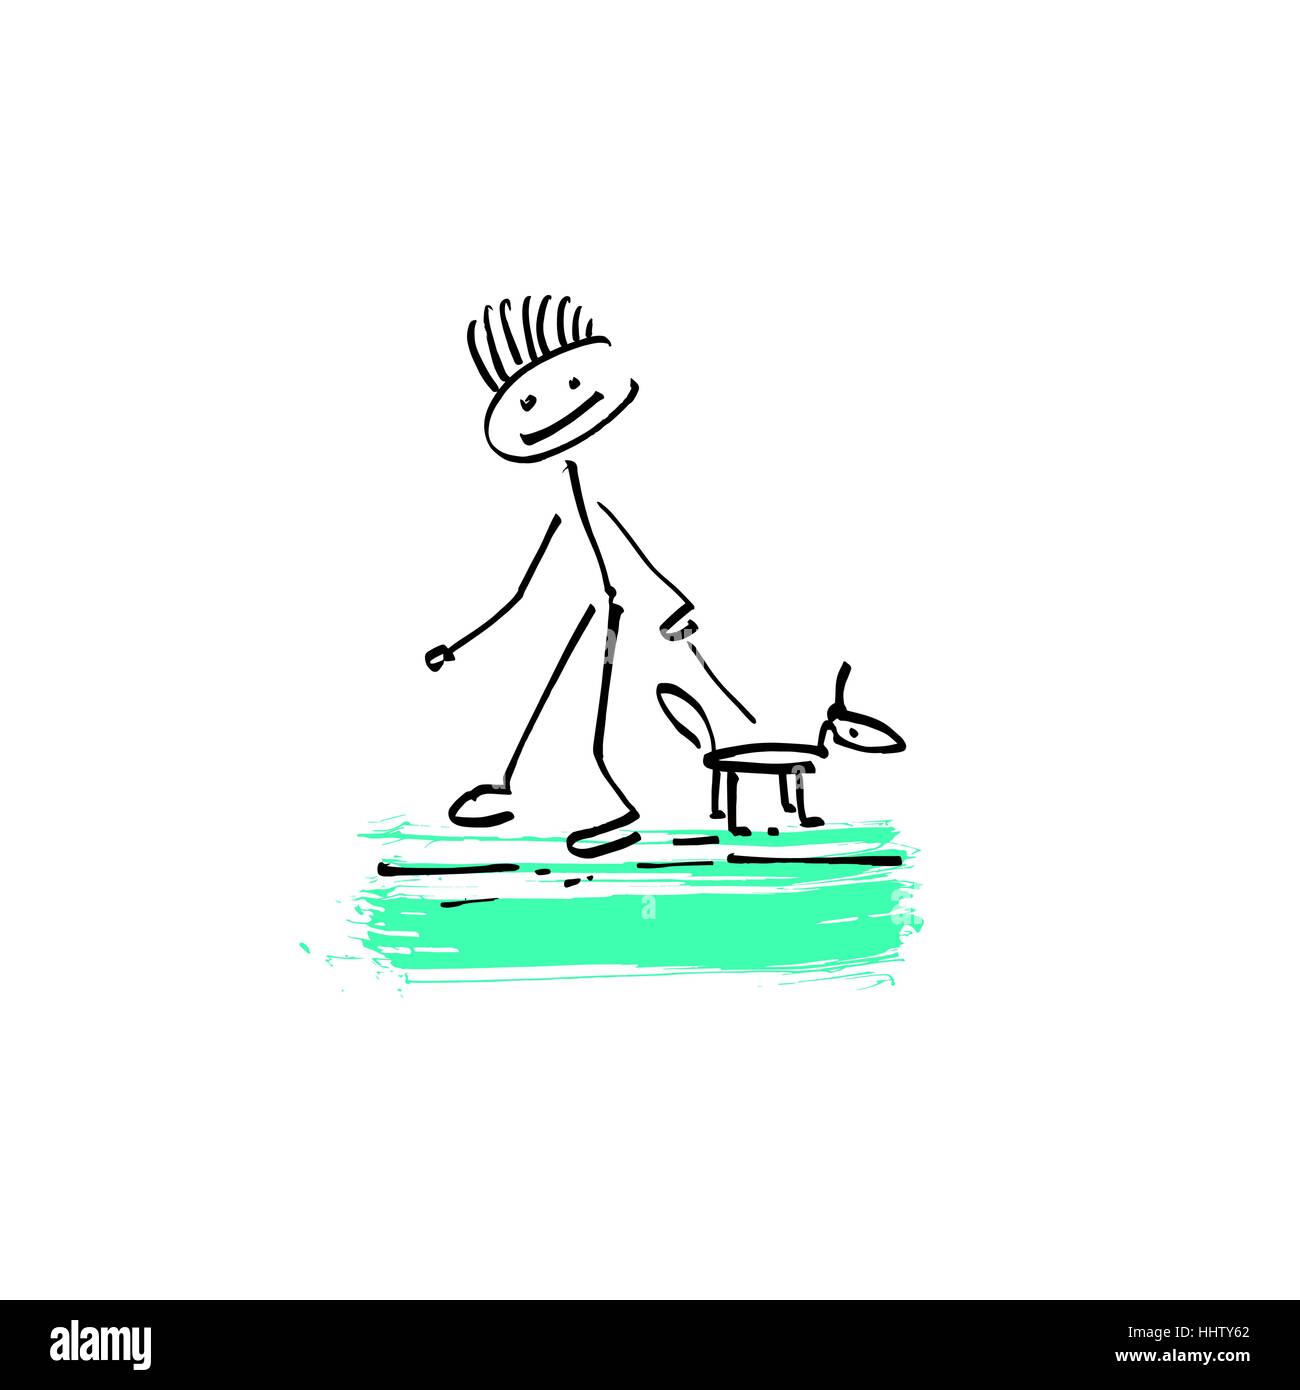 Zeichnung Skizze Doodle menschlichen Strichmännchen Mann zu Fuß mit einem  Hund Stock-Vektorgrafik - Alamy